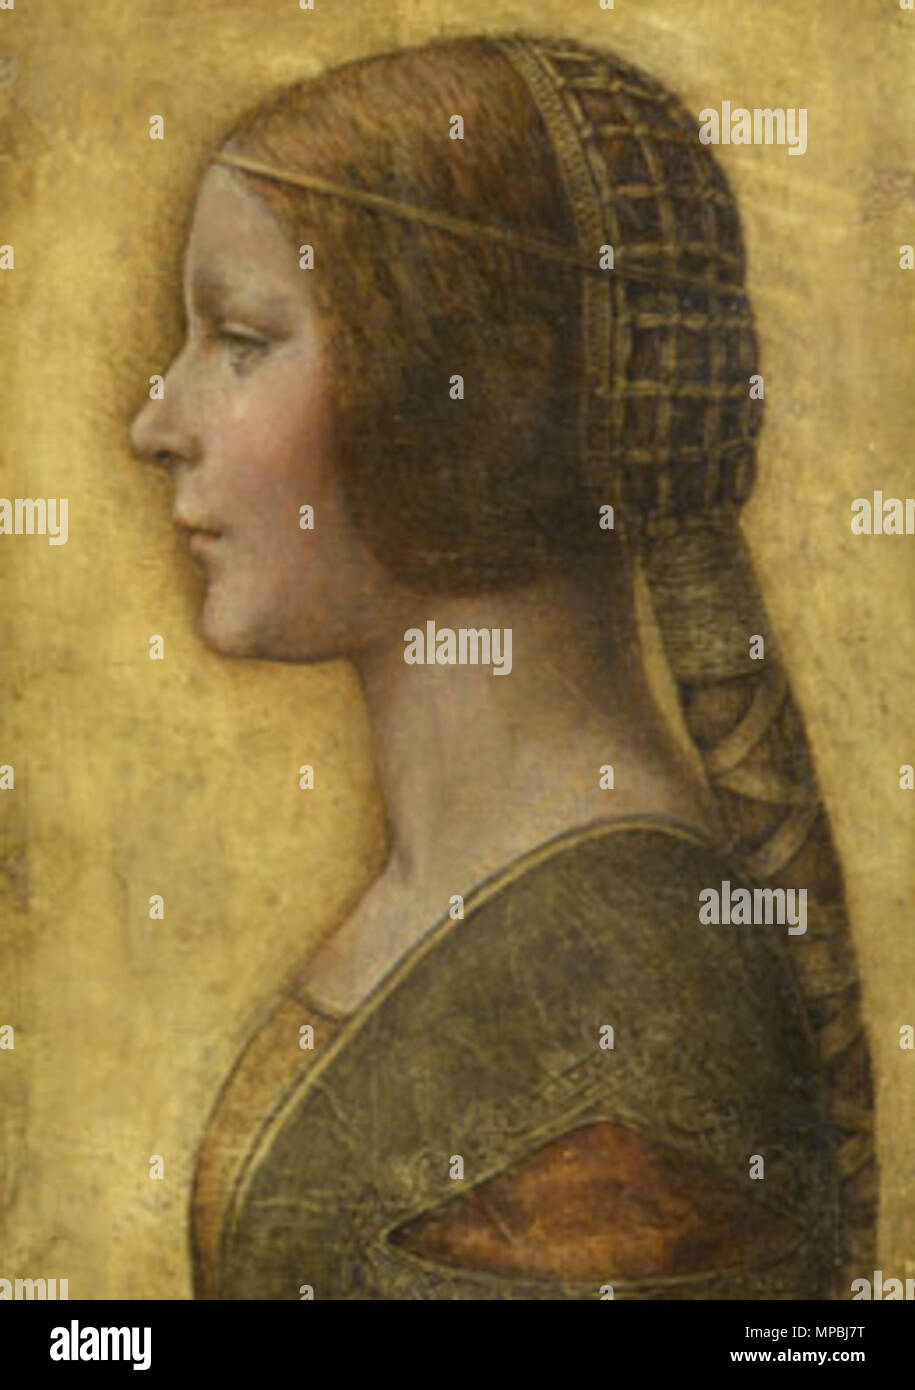 Portrait de mariage d'une jeune femme . 1490s. Attribué à Léonard de Vinci  (1452-1519) Noms alternatifs Leonardo di ser Piero da Vinci, Leonardo  Description peintre italien, ingénieur, astronome, mathématicien et  philosophe,